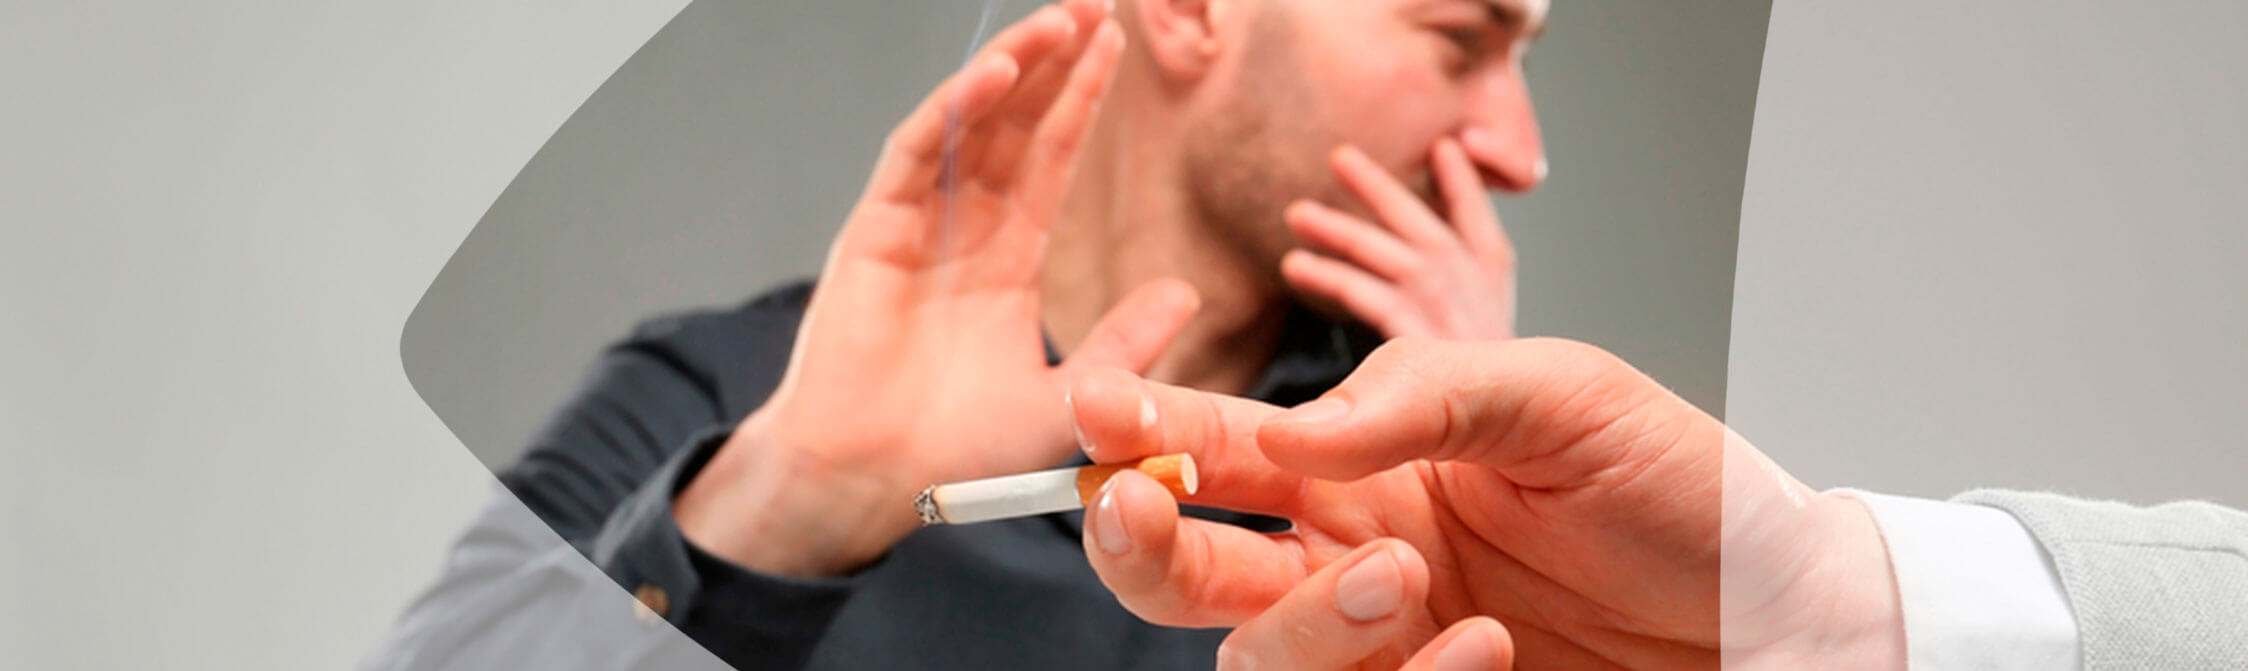 Fumo passivo: conheça todos os seus riscos